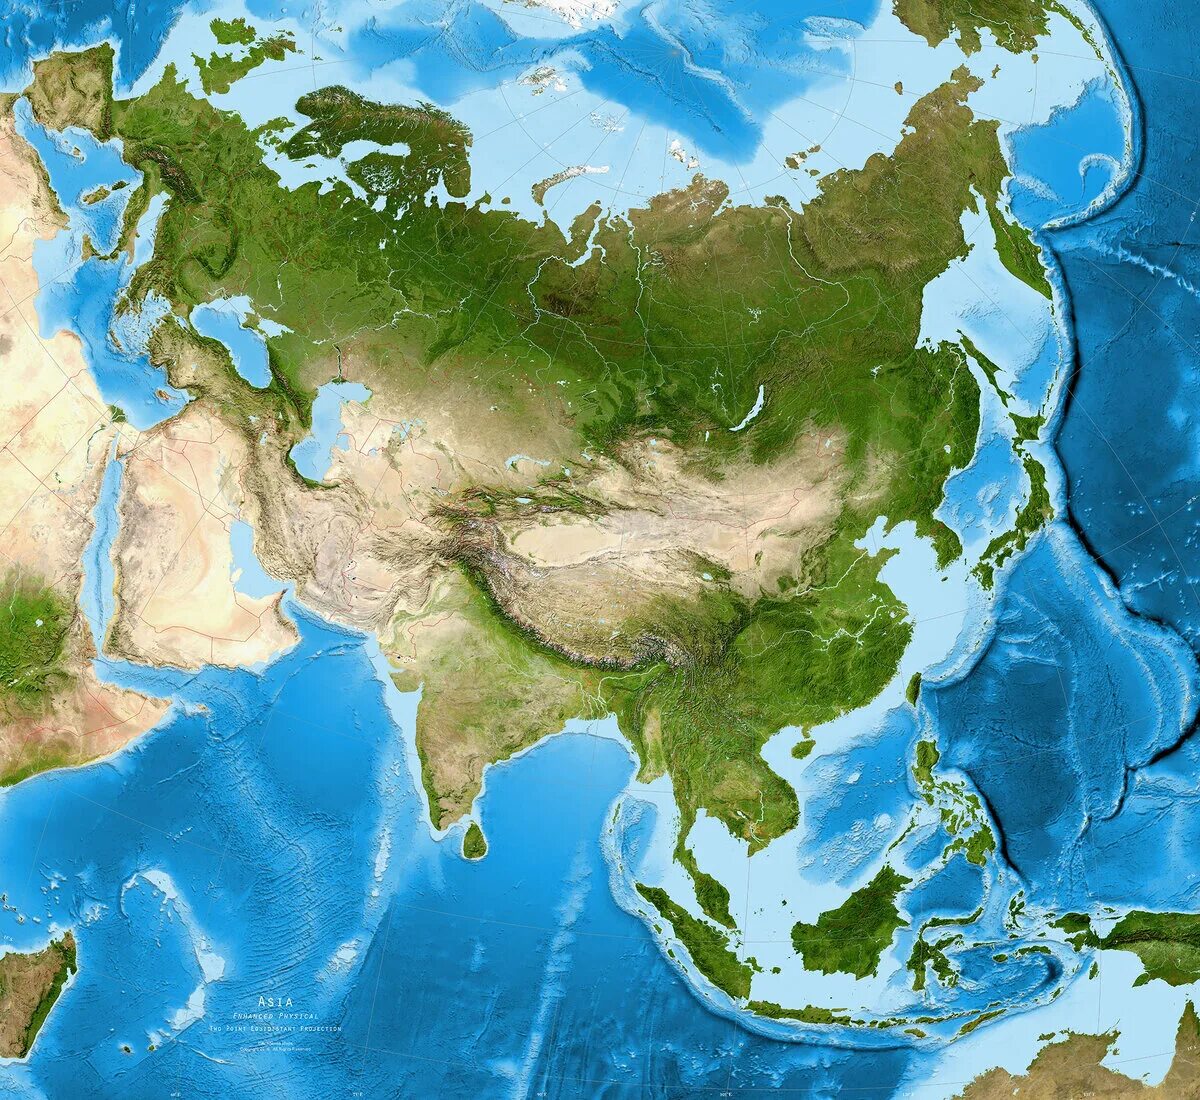 День евразии. Материк Евразия. Спутниковый снимок Евразии. Материк Азия материк Евразия. Континент Евразия.